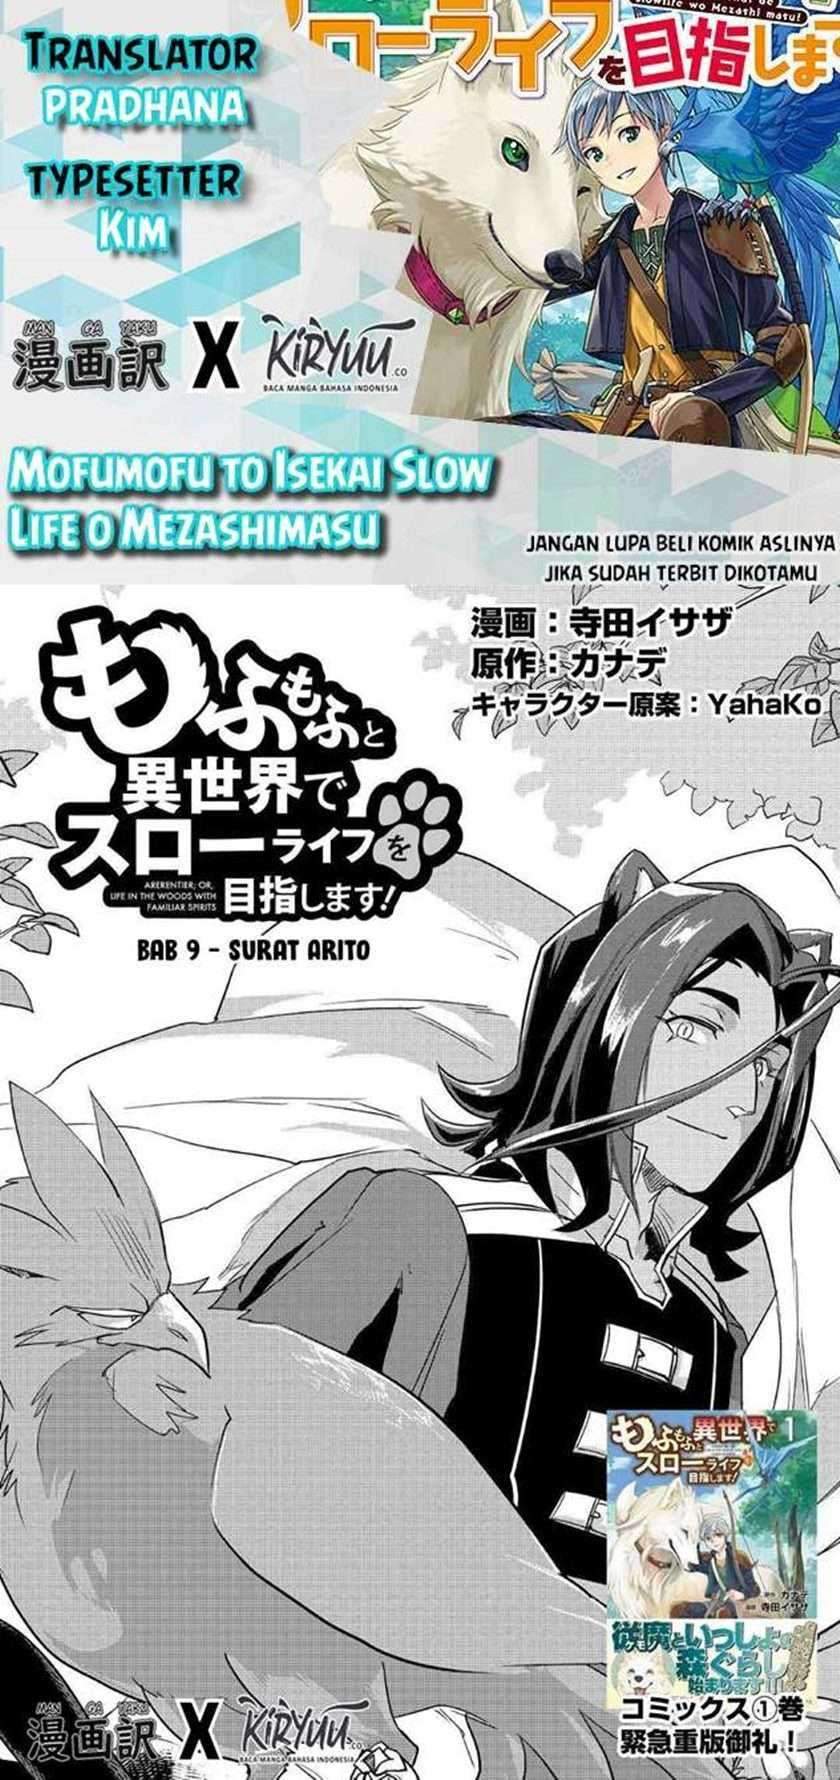 Mofumofu To Isekai Slow Life O Mezashimasu! Chapter 09 - 265